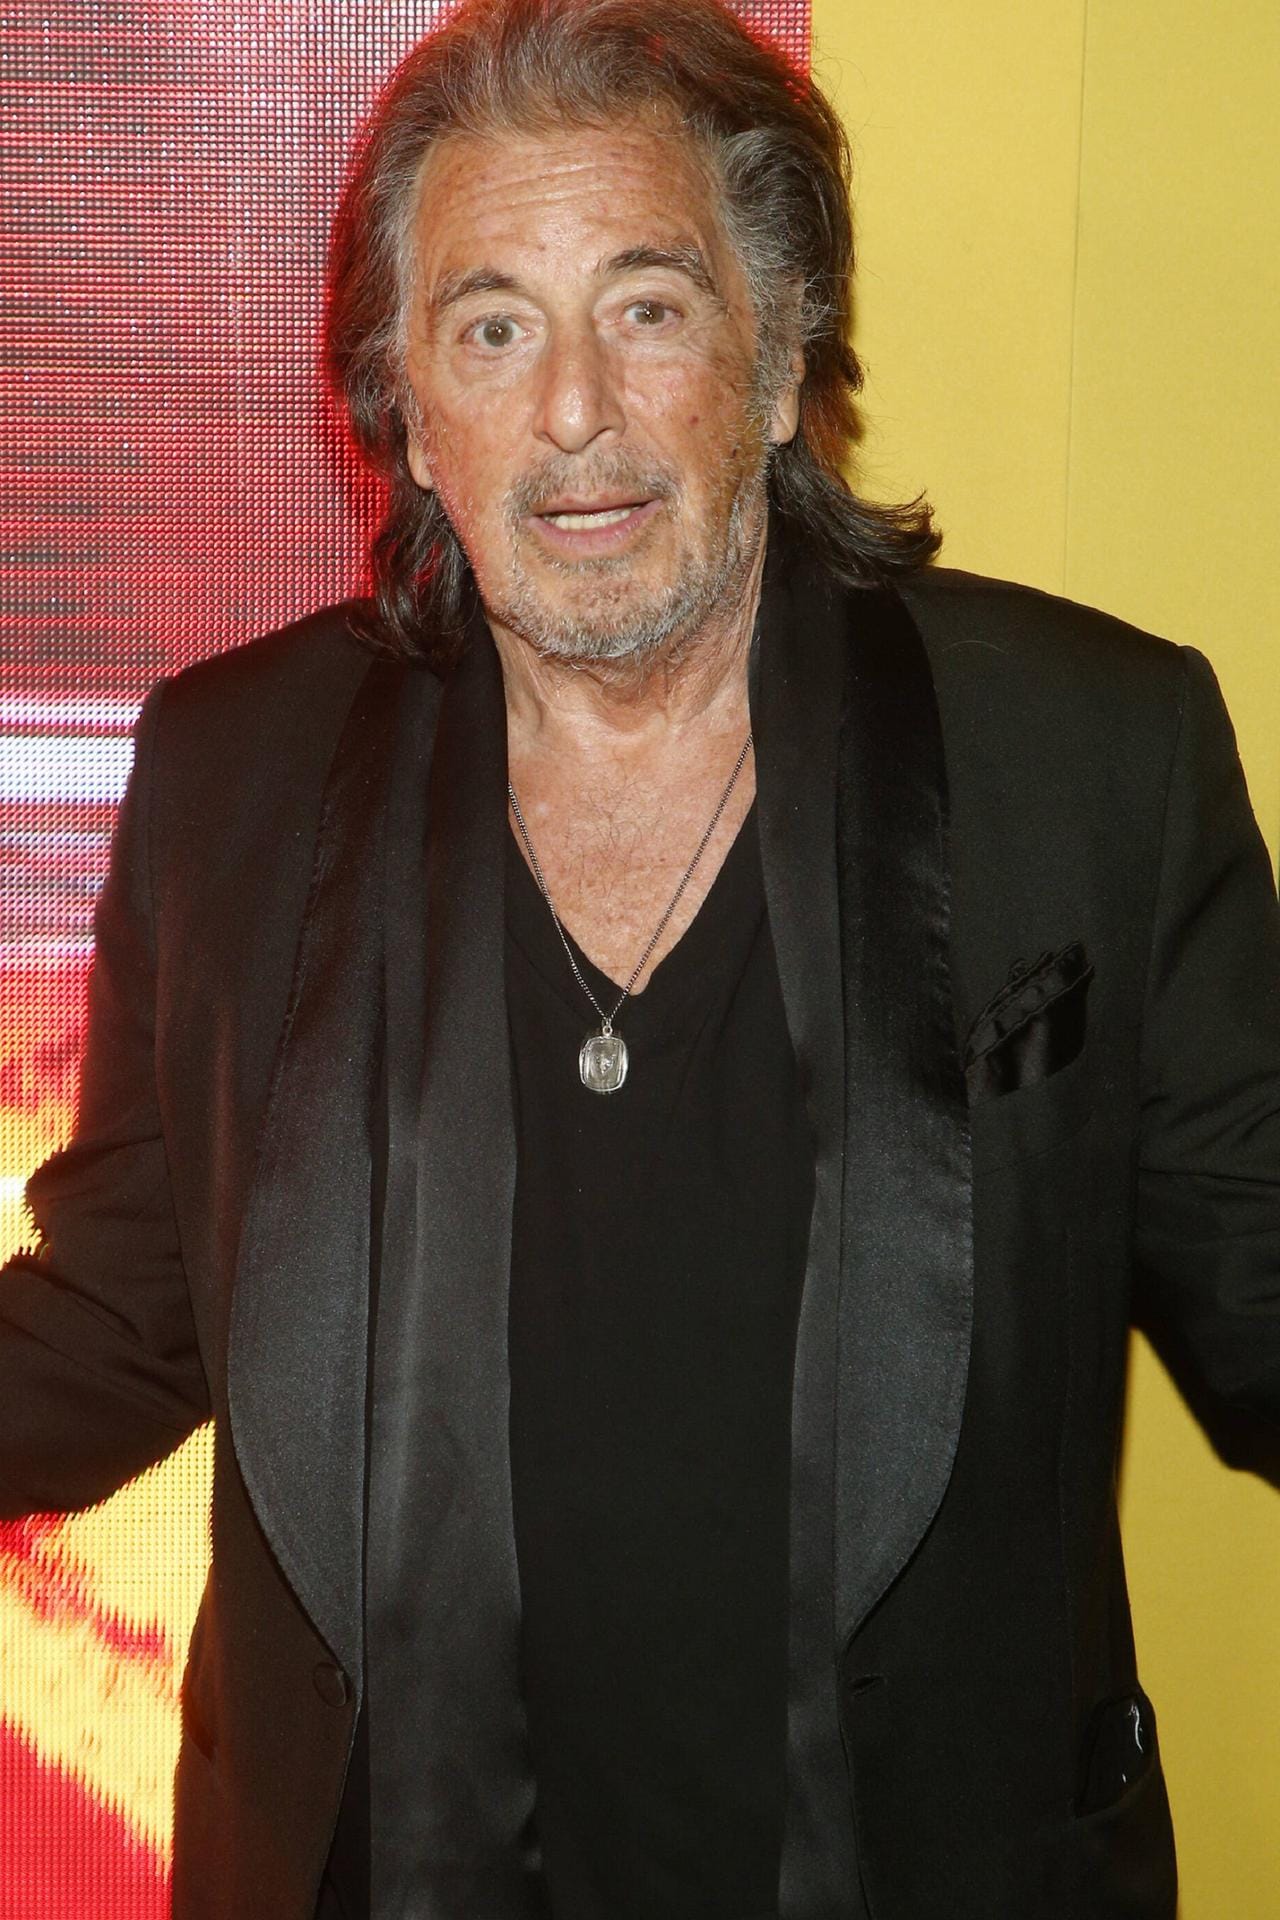 Vom Mafioso zum Womanizer? Al Pacino hatte bereits Test-Szenen mit Julia Roberts gedreht, doch auf den romantischen Geschäftsmann Edward Lewis aus "Pretty Woman" hatte er dann doch keine Lust. Fast wäre auch Richard Gere abgesprungen - aber nur fast.